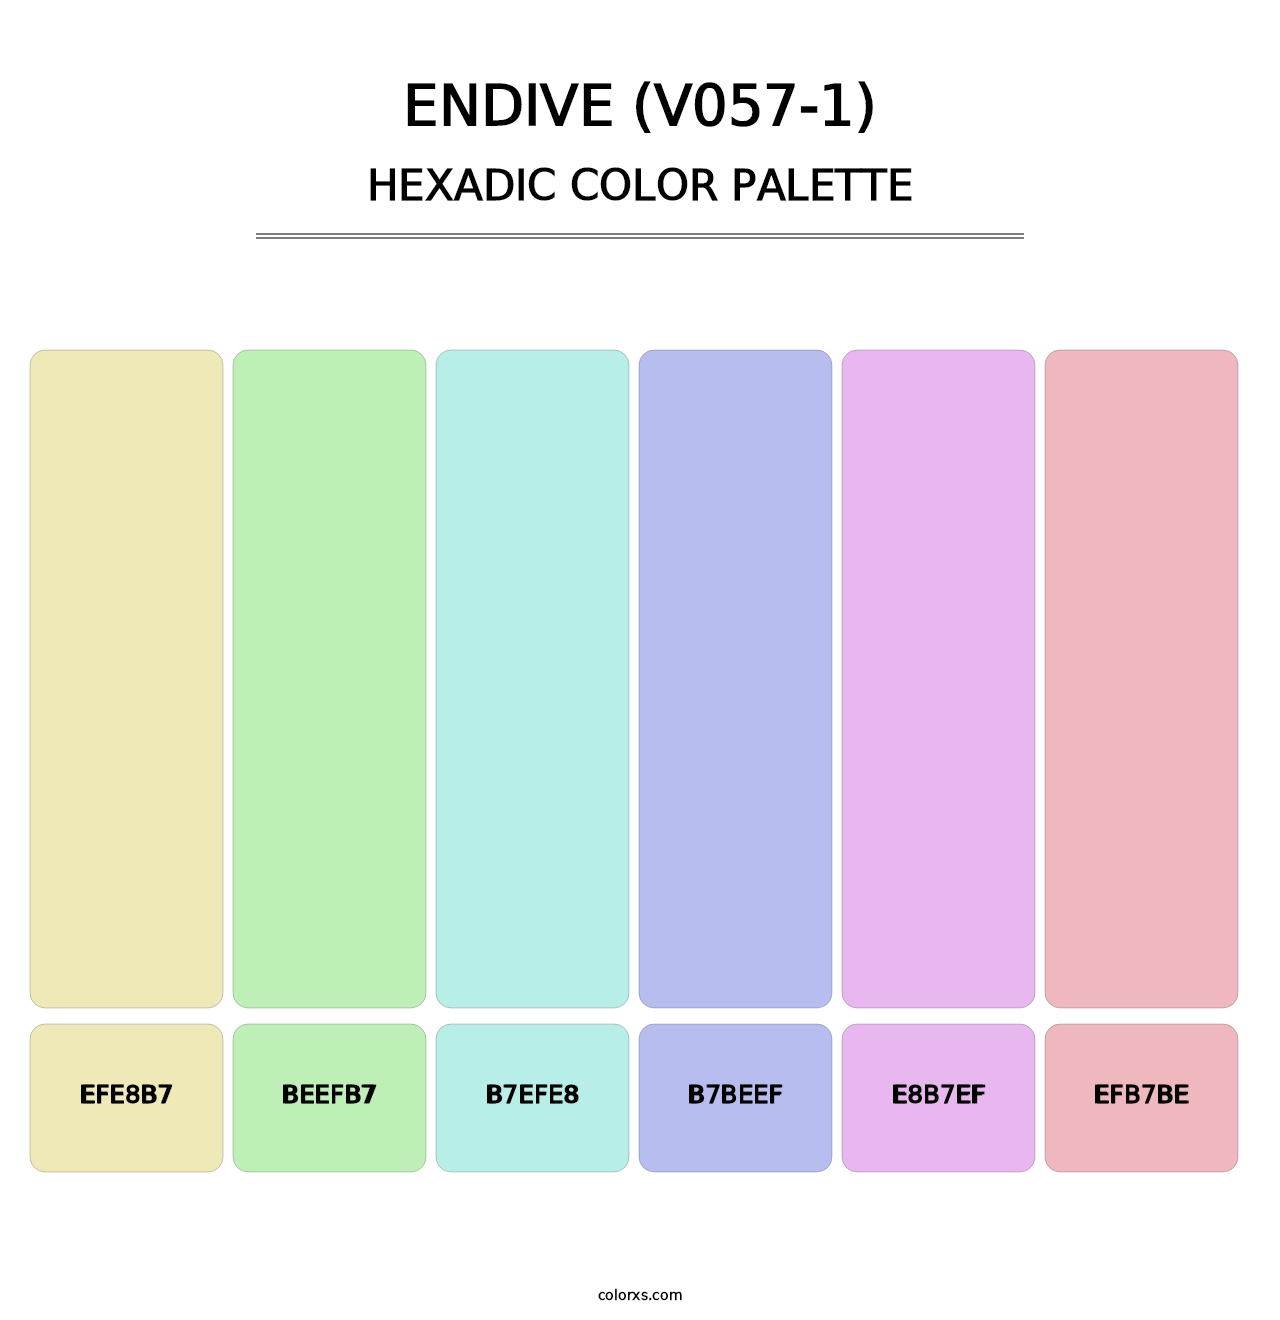 Endive (V057-1) - Hexadic Color Palette